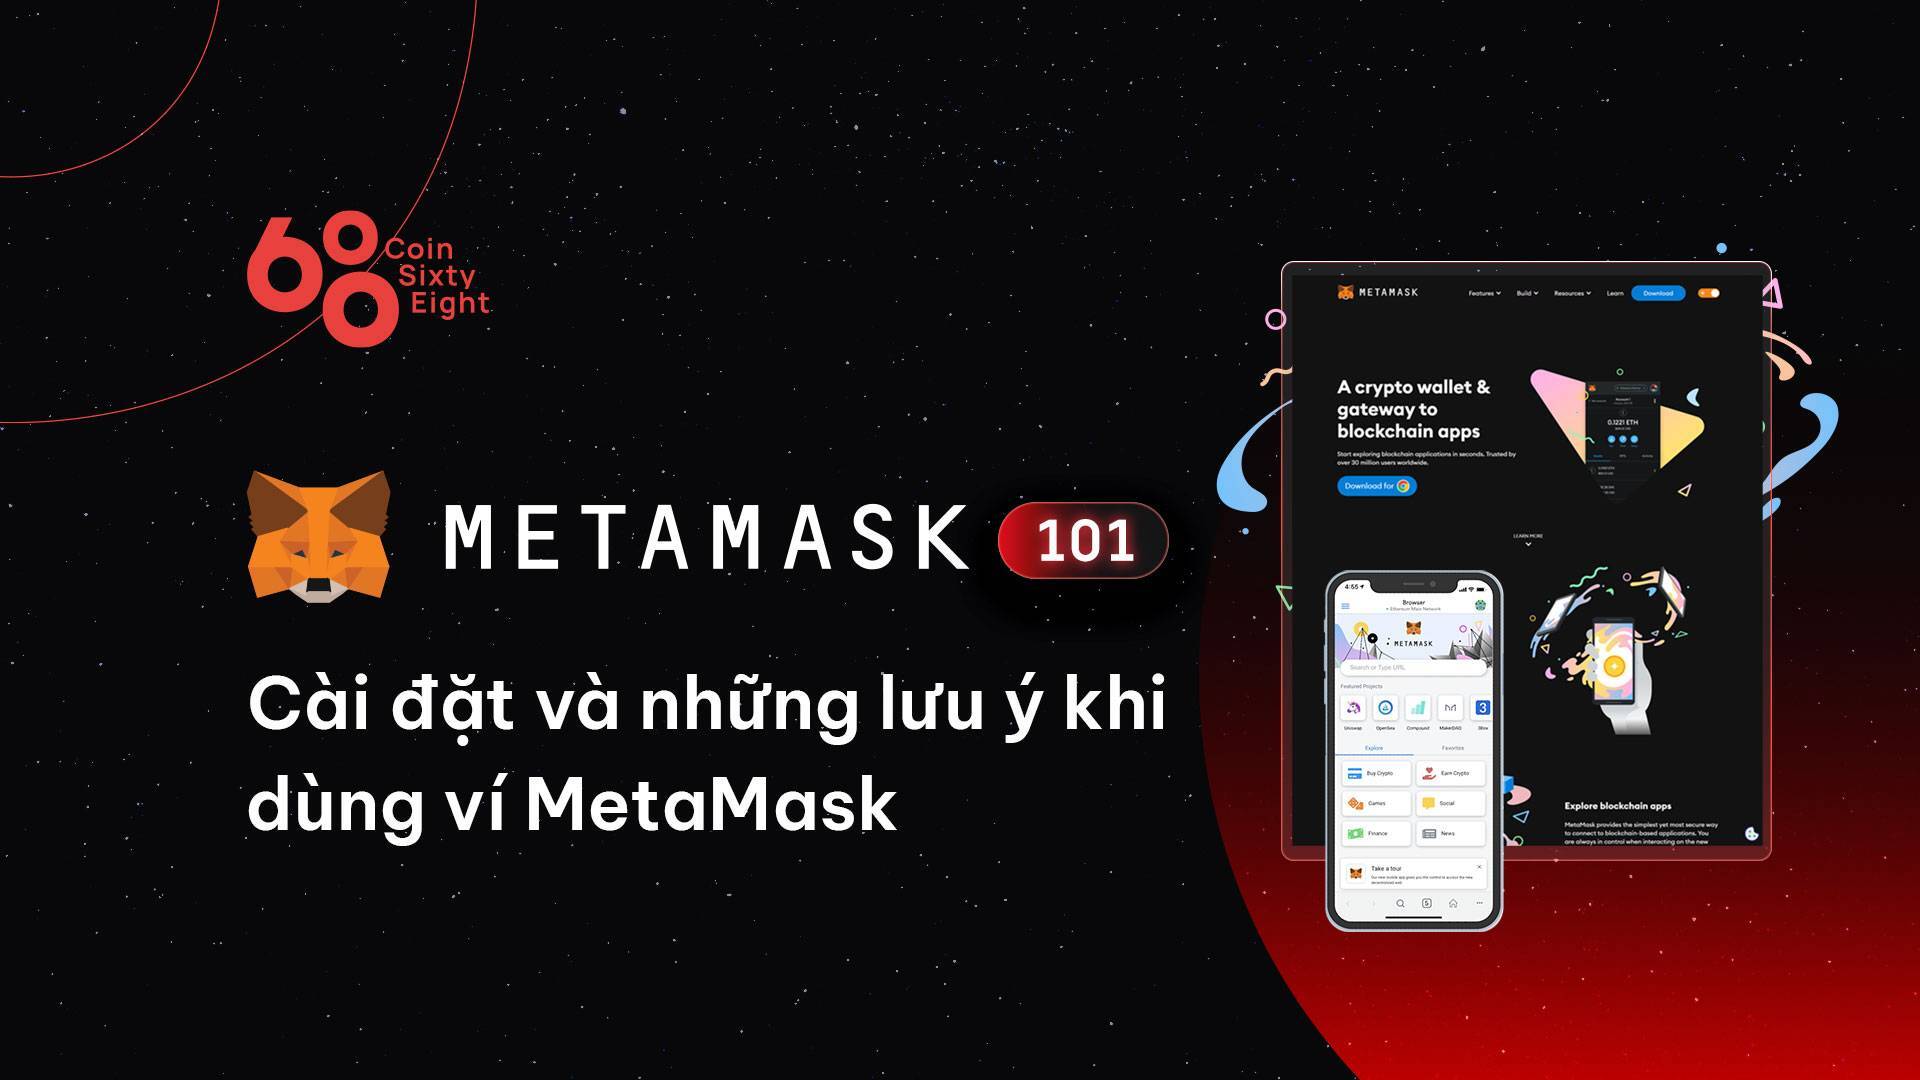 Metamask 101 Hướng Dẫn Cách Cài Đặt Và Những Lưu Ý Khi Dùng Ví Metamask